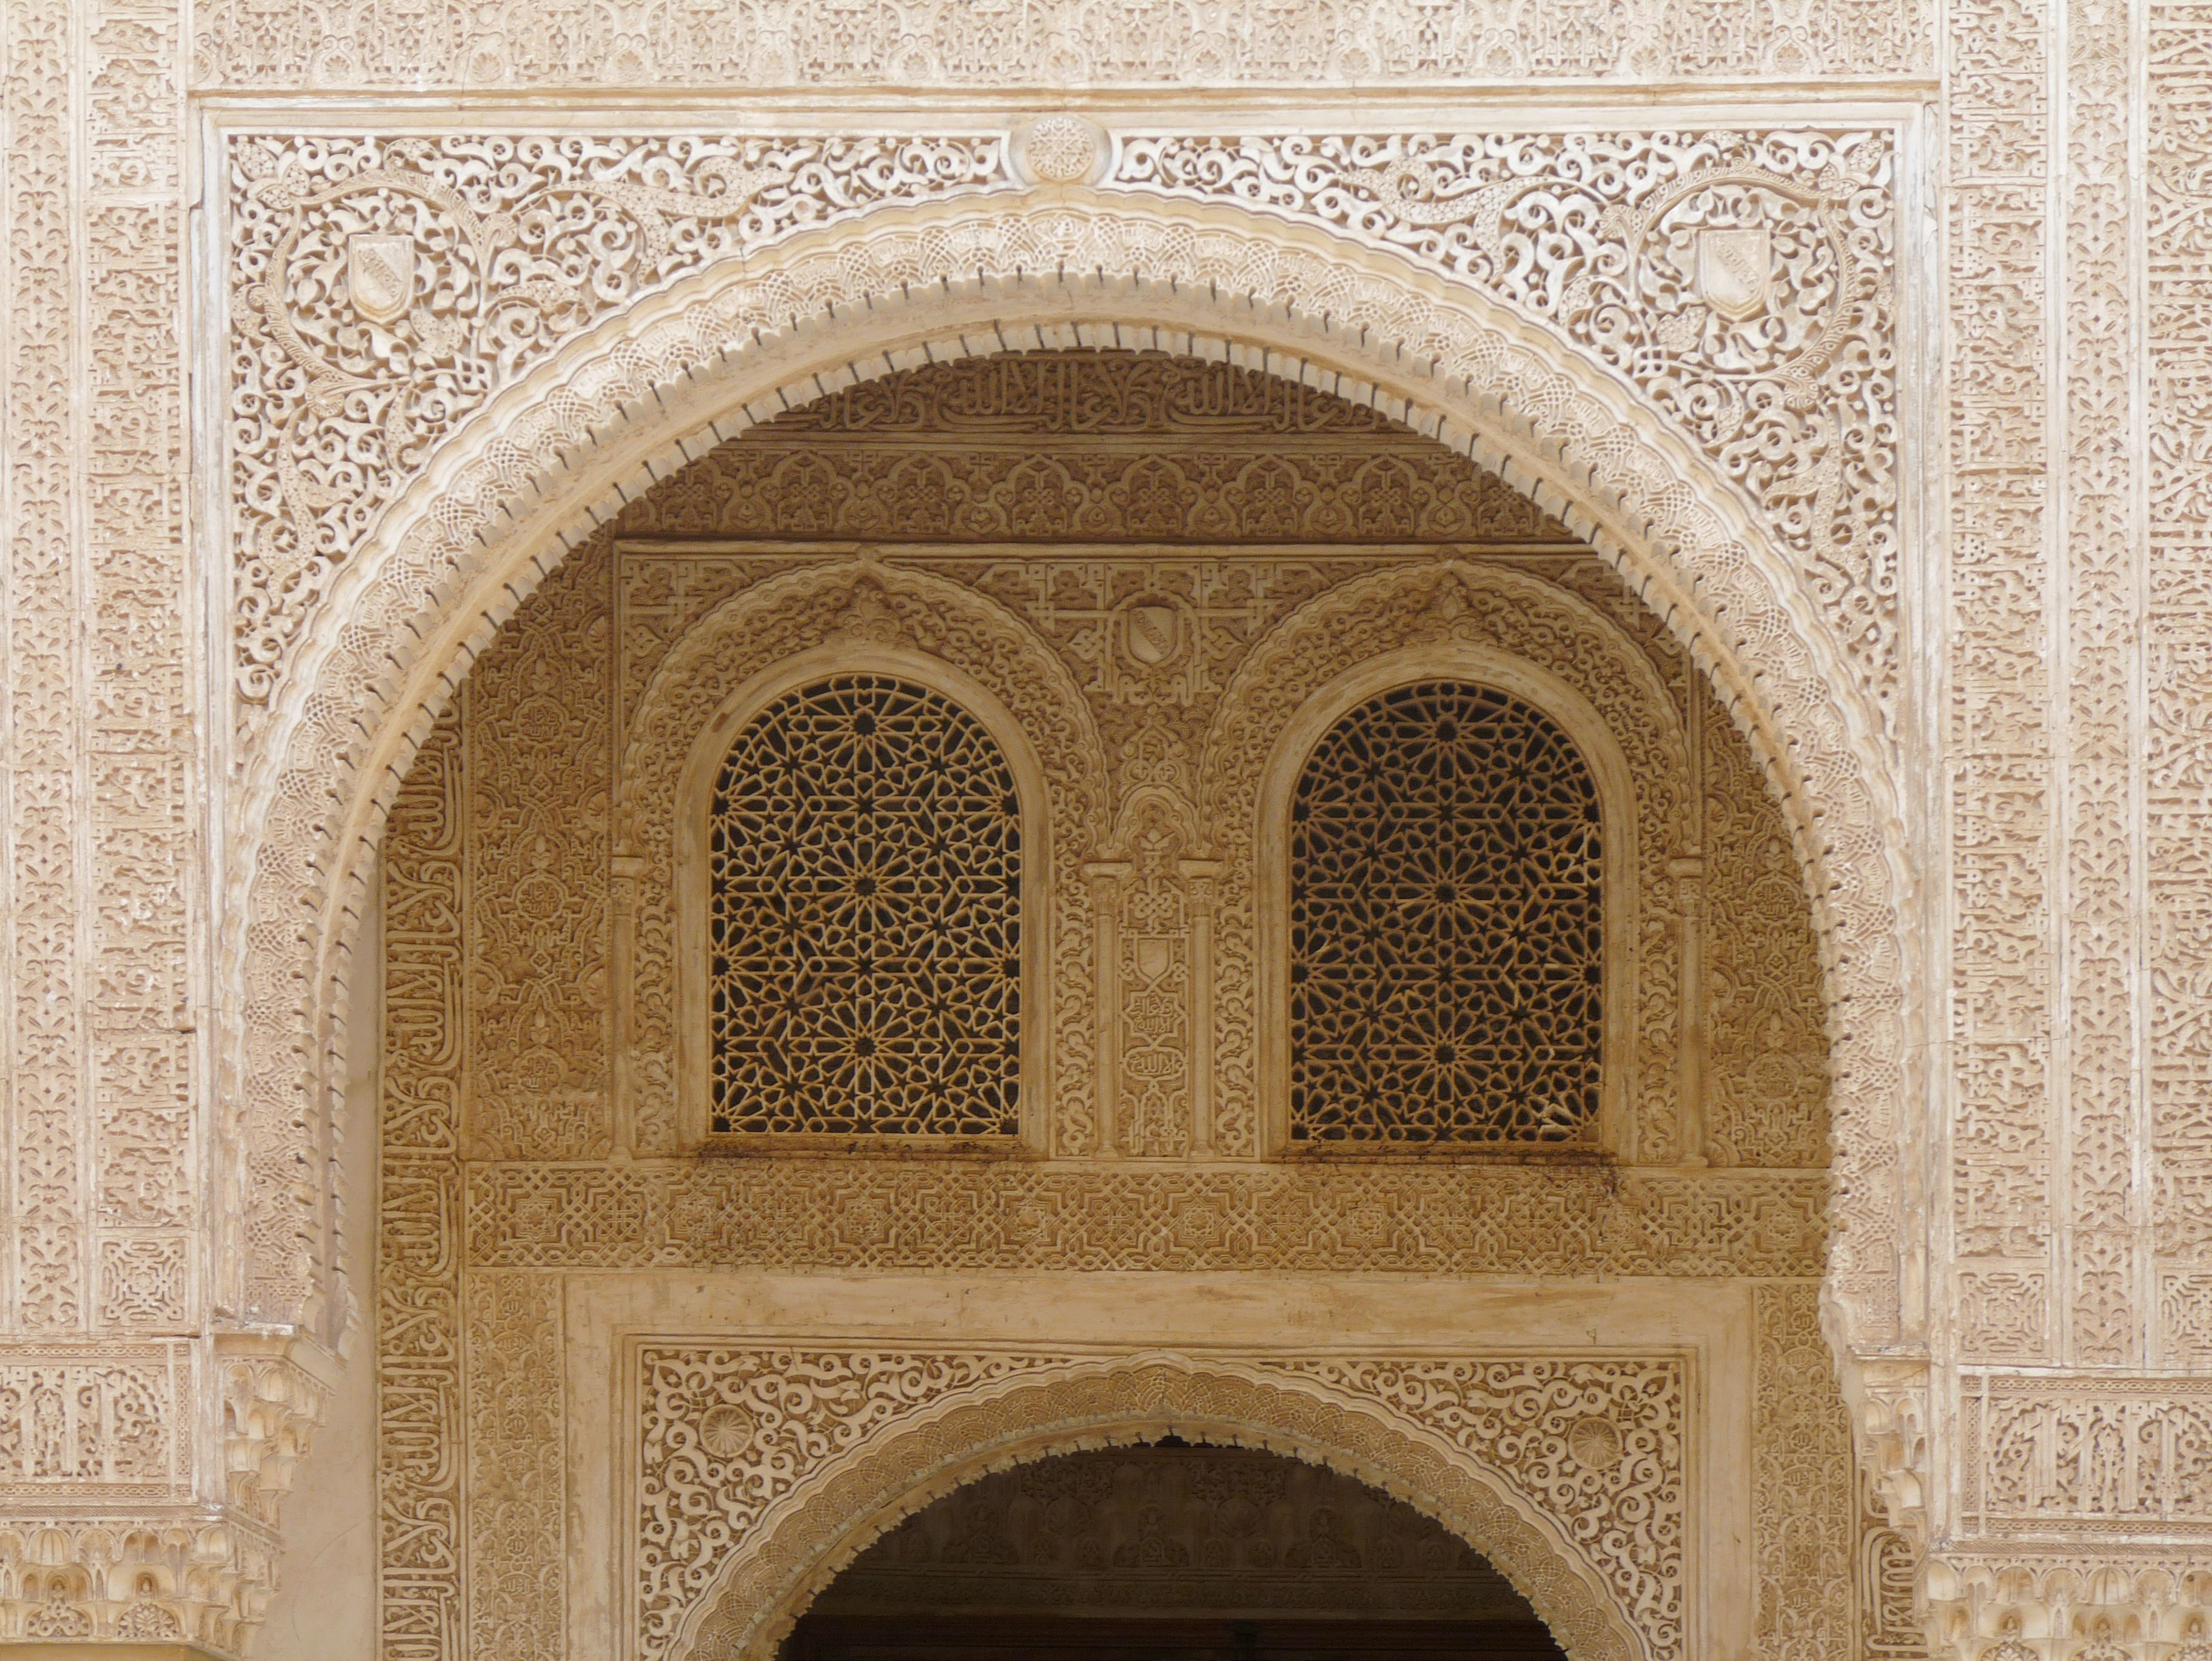 visita guiada a la Alhambra y el Generalife